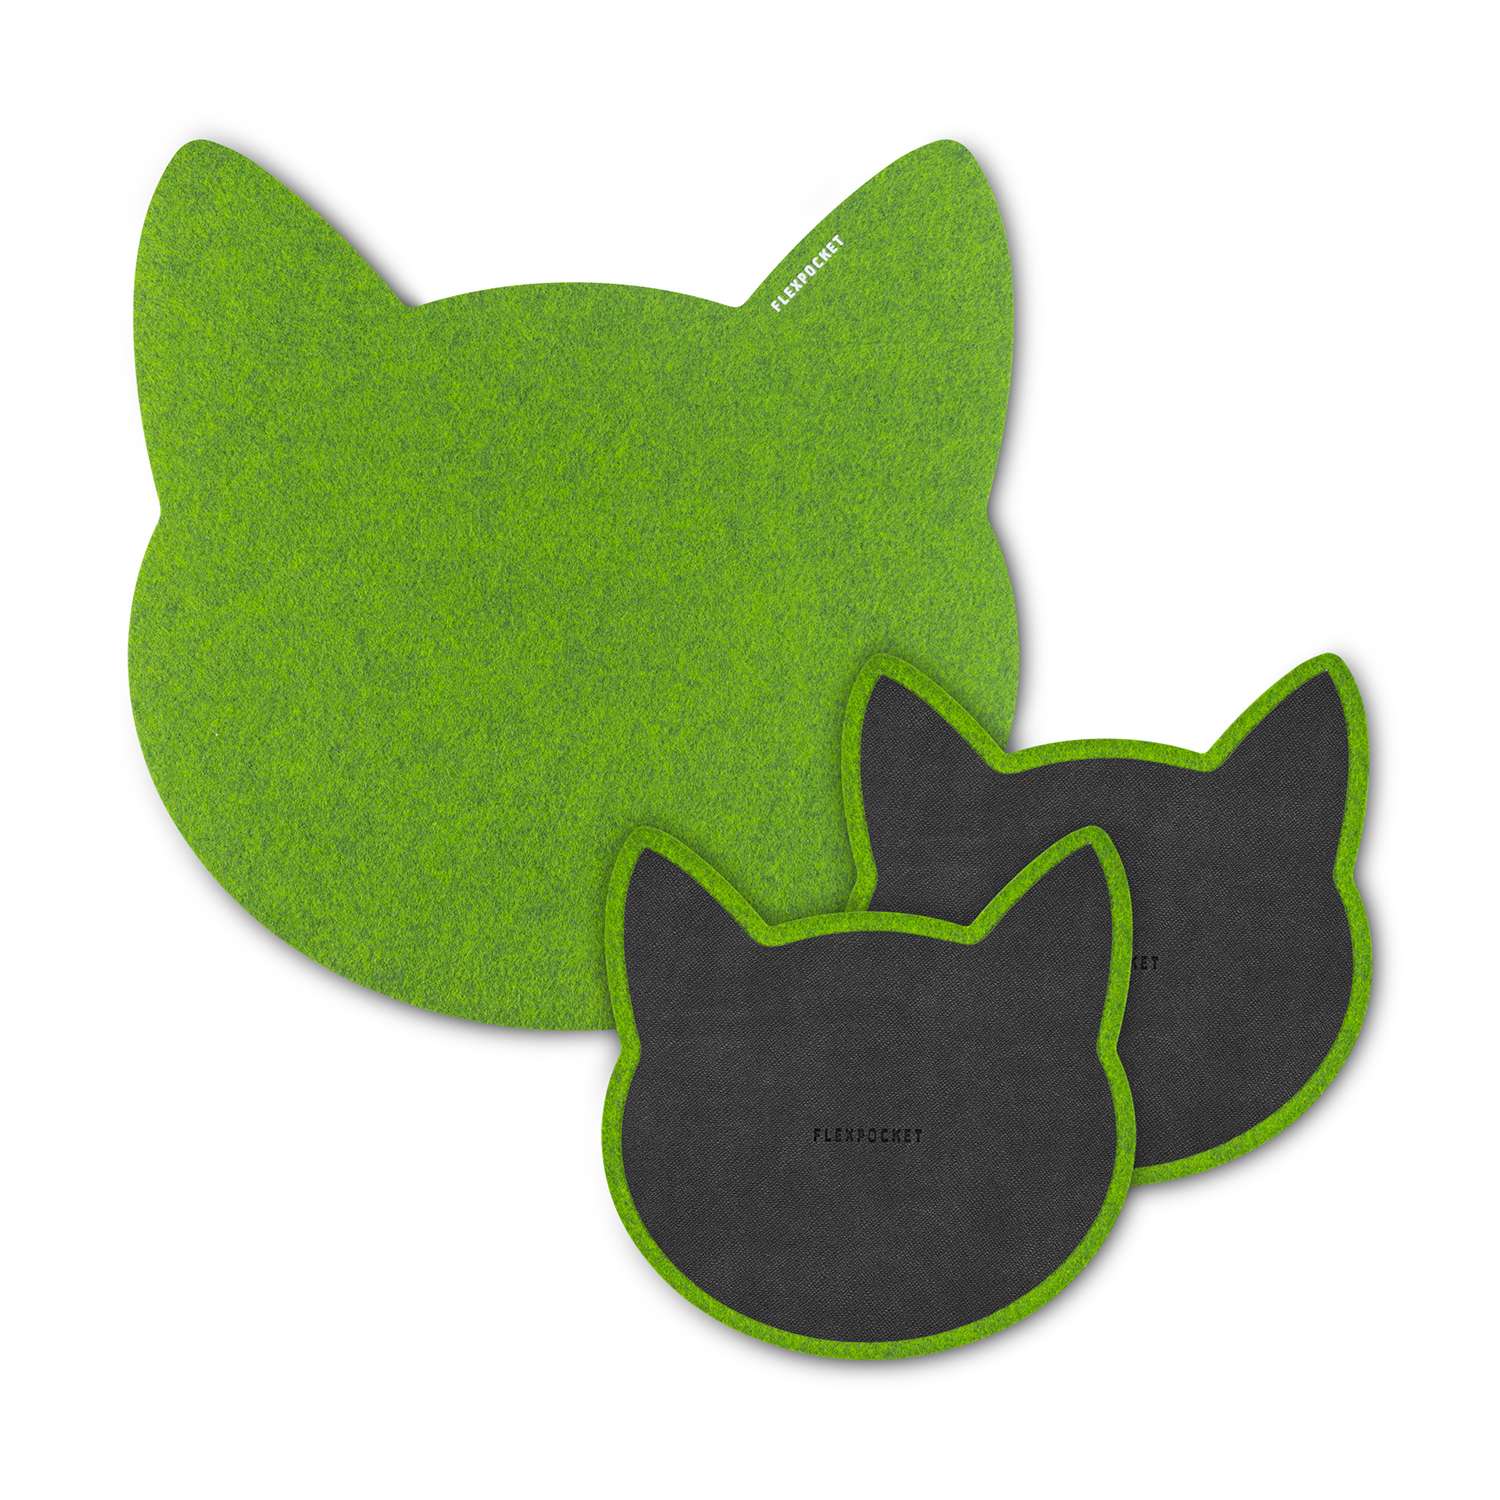 Настольный коврик Flexpocket для мыши в виде кошки + комплект с подставкой под кружку зеленый - фото 1